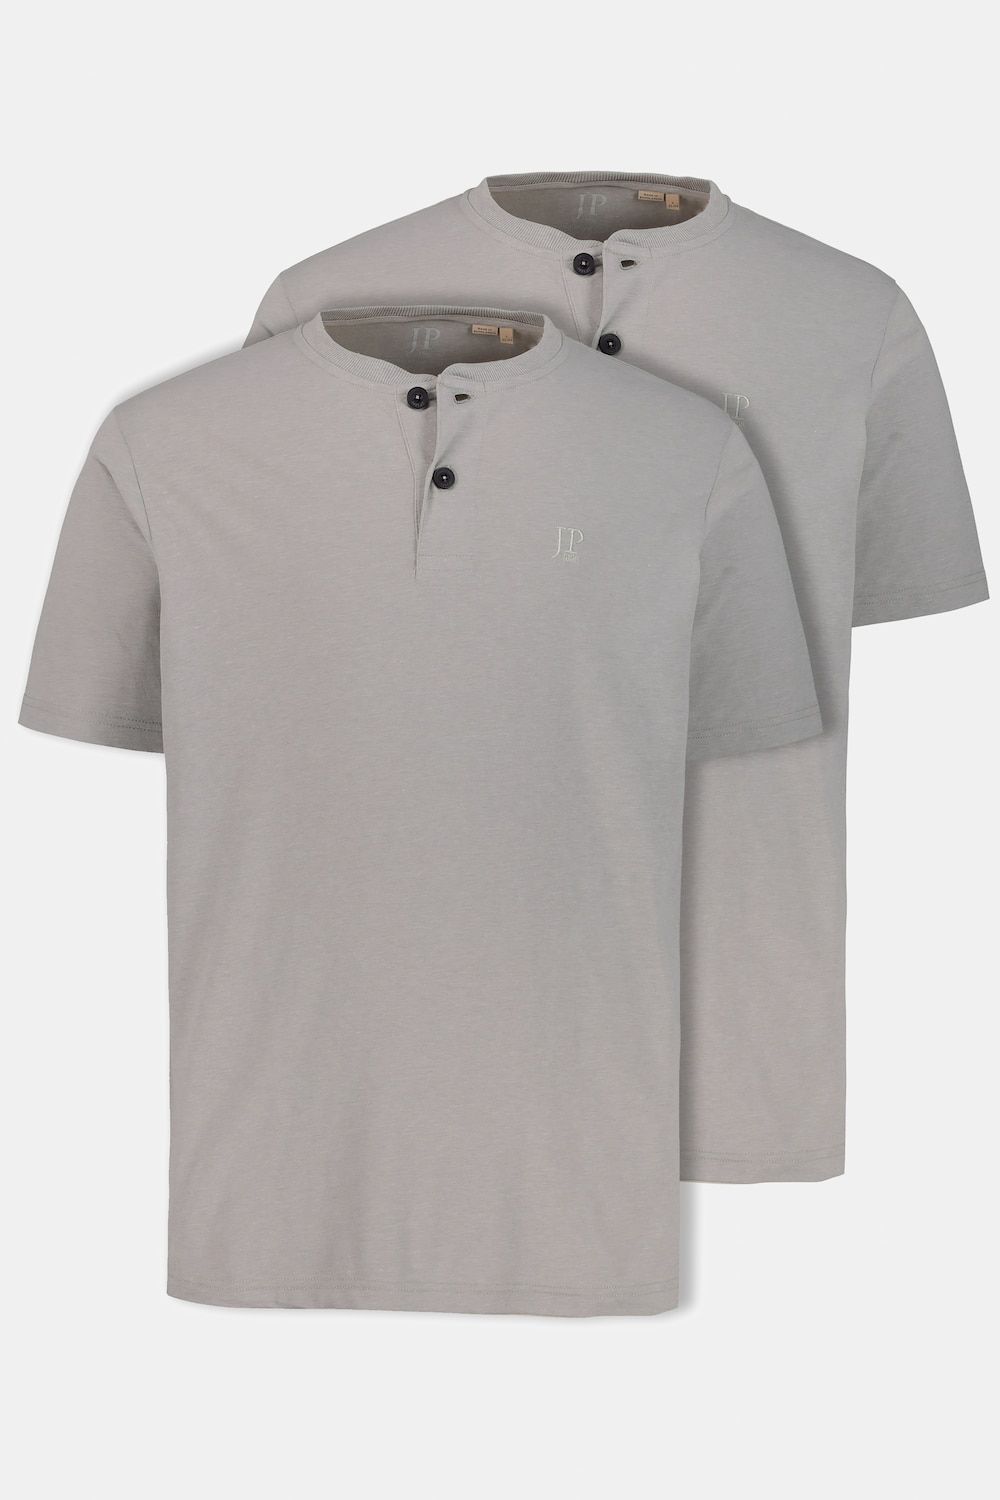 JP 1880 Herren große Größen bis 7XL, T-Shirt im Doppelpack, Henley-Shirt, Rundhalsausschnitt, Knopfleiste, schwarz, schwarz L 708420 10-L